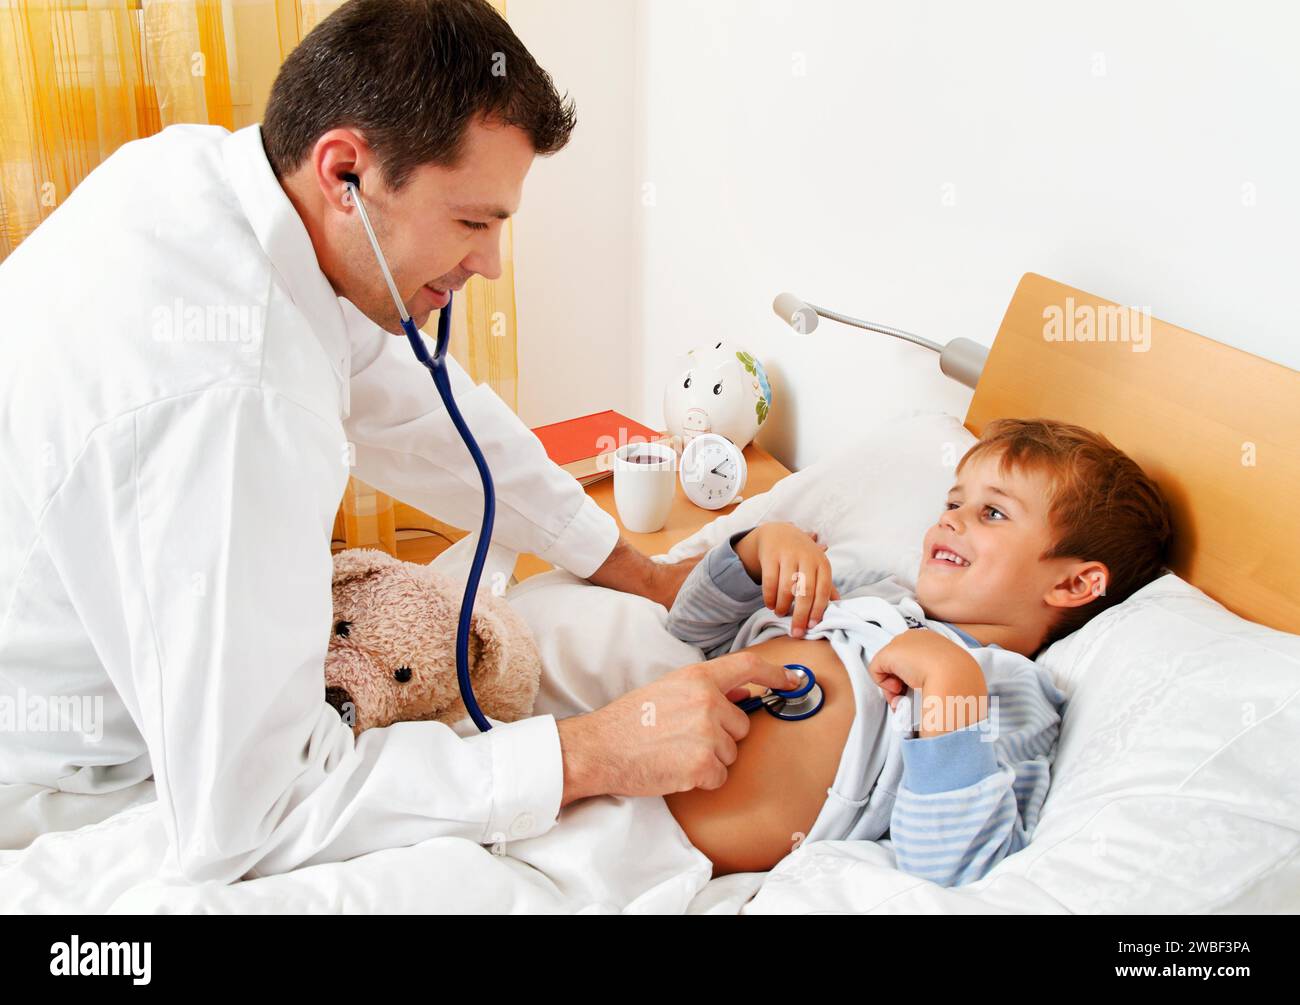 Ein Hausarzt untersucht ein krankes Kind. Kleiner Junge, der im Bett liegt, 4-6 Jahre alt, Stethoskop, Untersuchung, kalt, Grippe Stockfoto